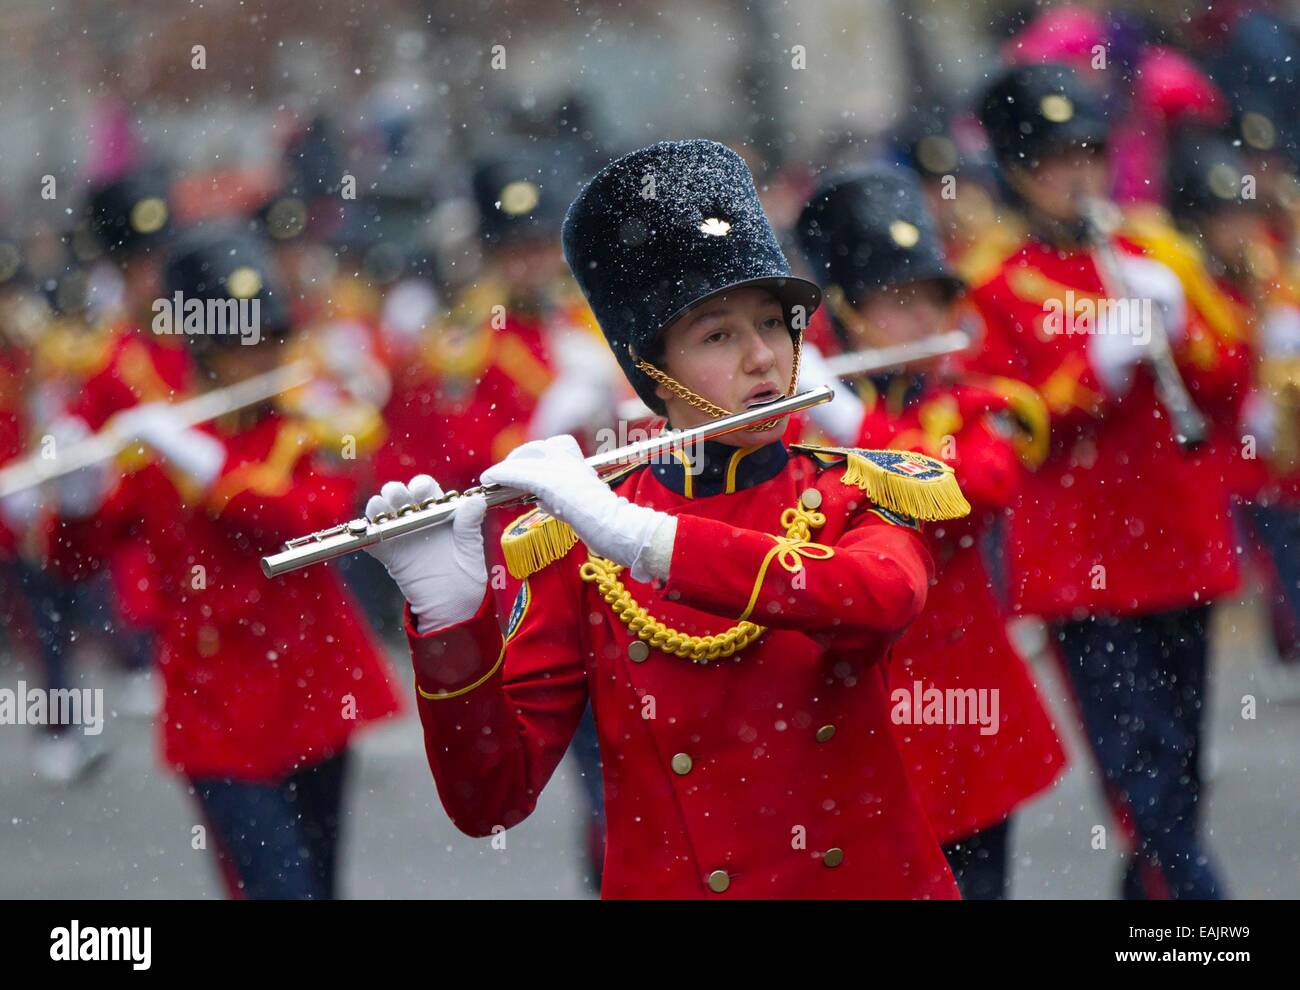 (141117)--TORONTO, 17. November 2014 (Xinhua)--eine Band führt während der 110. jährlichen Toronto Santa Claus Parade in Toronto, Kanada, 16. November 2014. Mit 21 Bands, 31 hin-und Herbewegungen und mehr als 3.000 freiwillige startete die Parade in Toronto am Sonntag. (Xinhua/Zou Zheng) Stockfoto